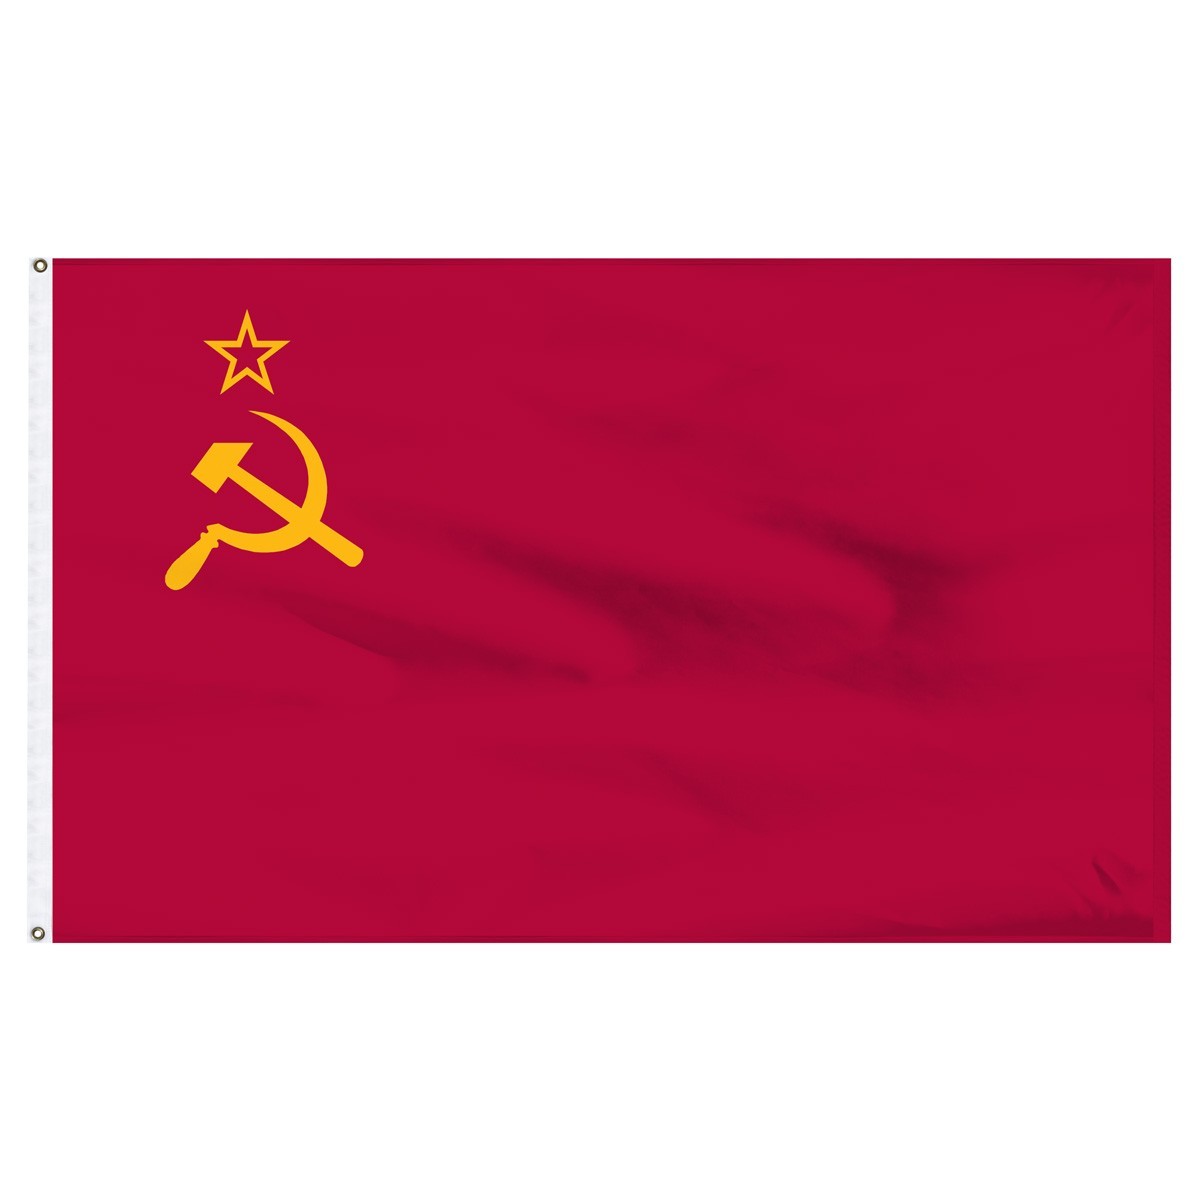 USSR 3ft x 5ft Outdoor Nylon Flag